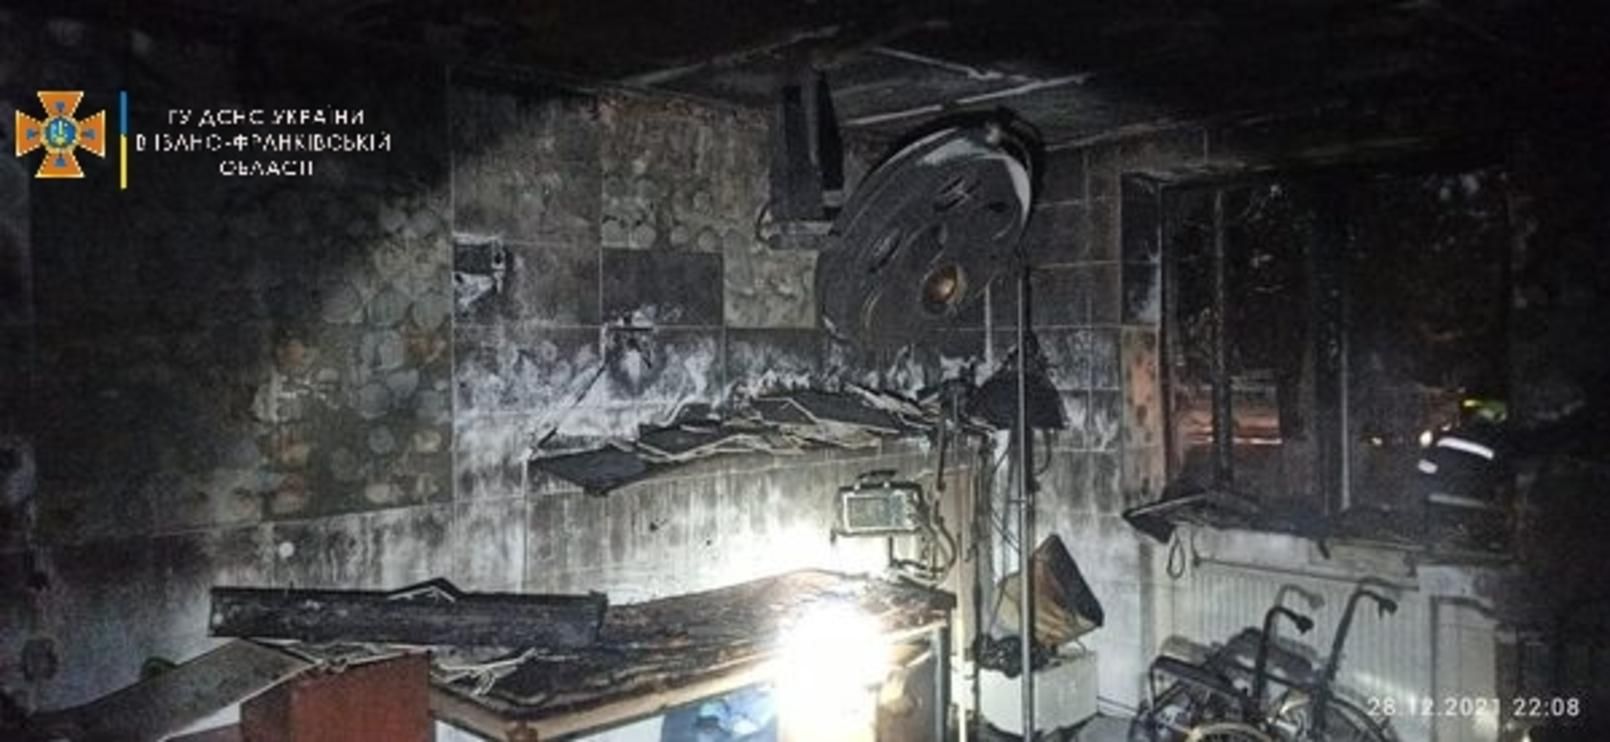 В результате пожара в больнице в Косово пострадали медики: двое – в критическом состоянии